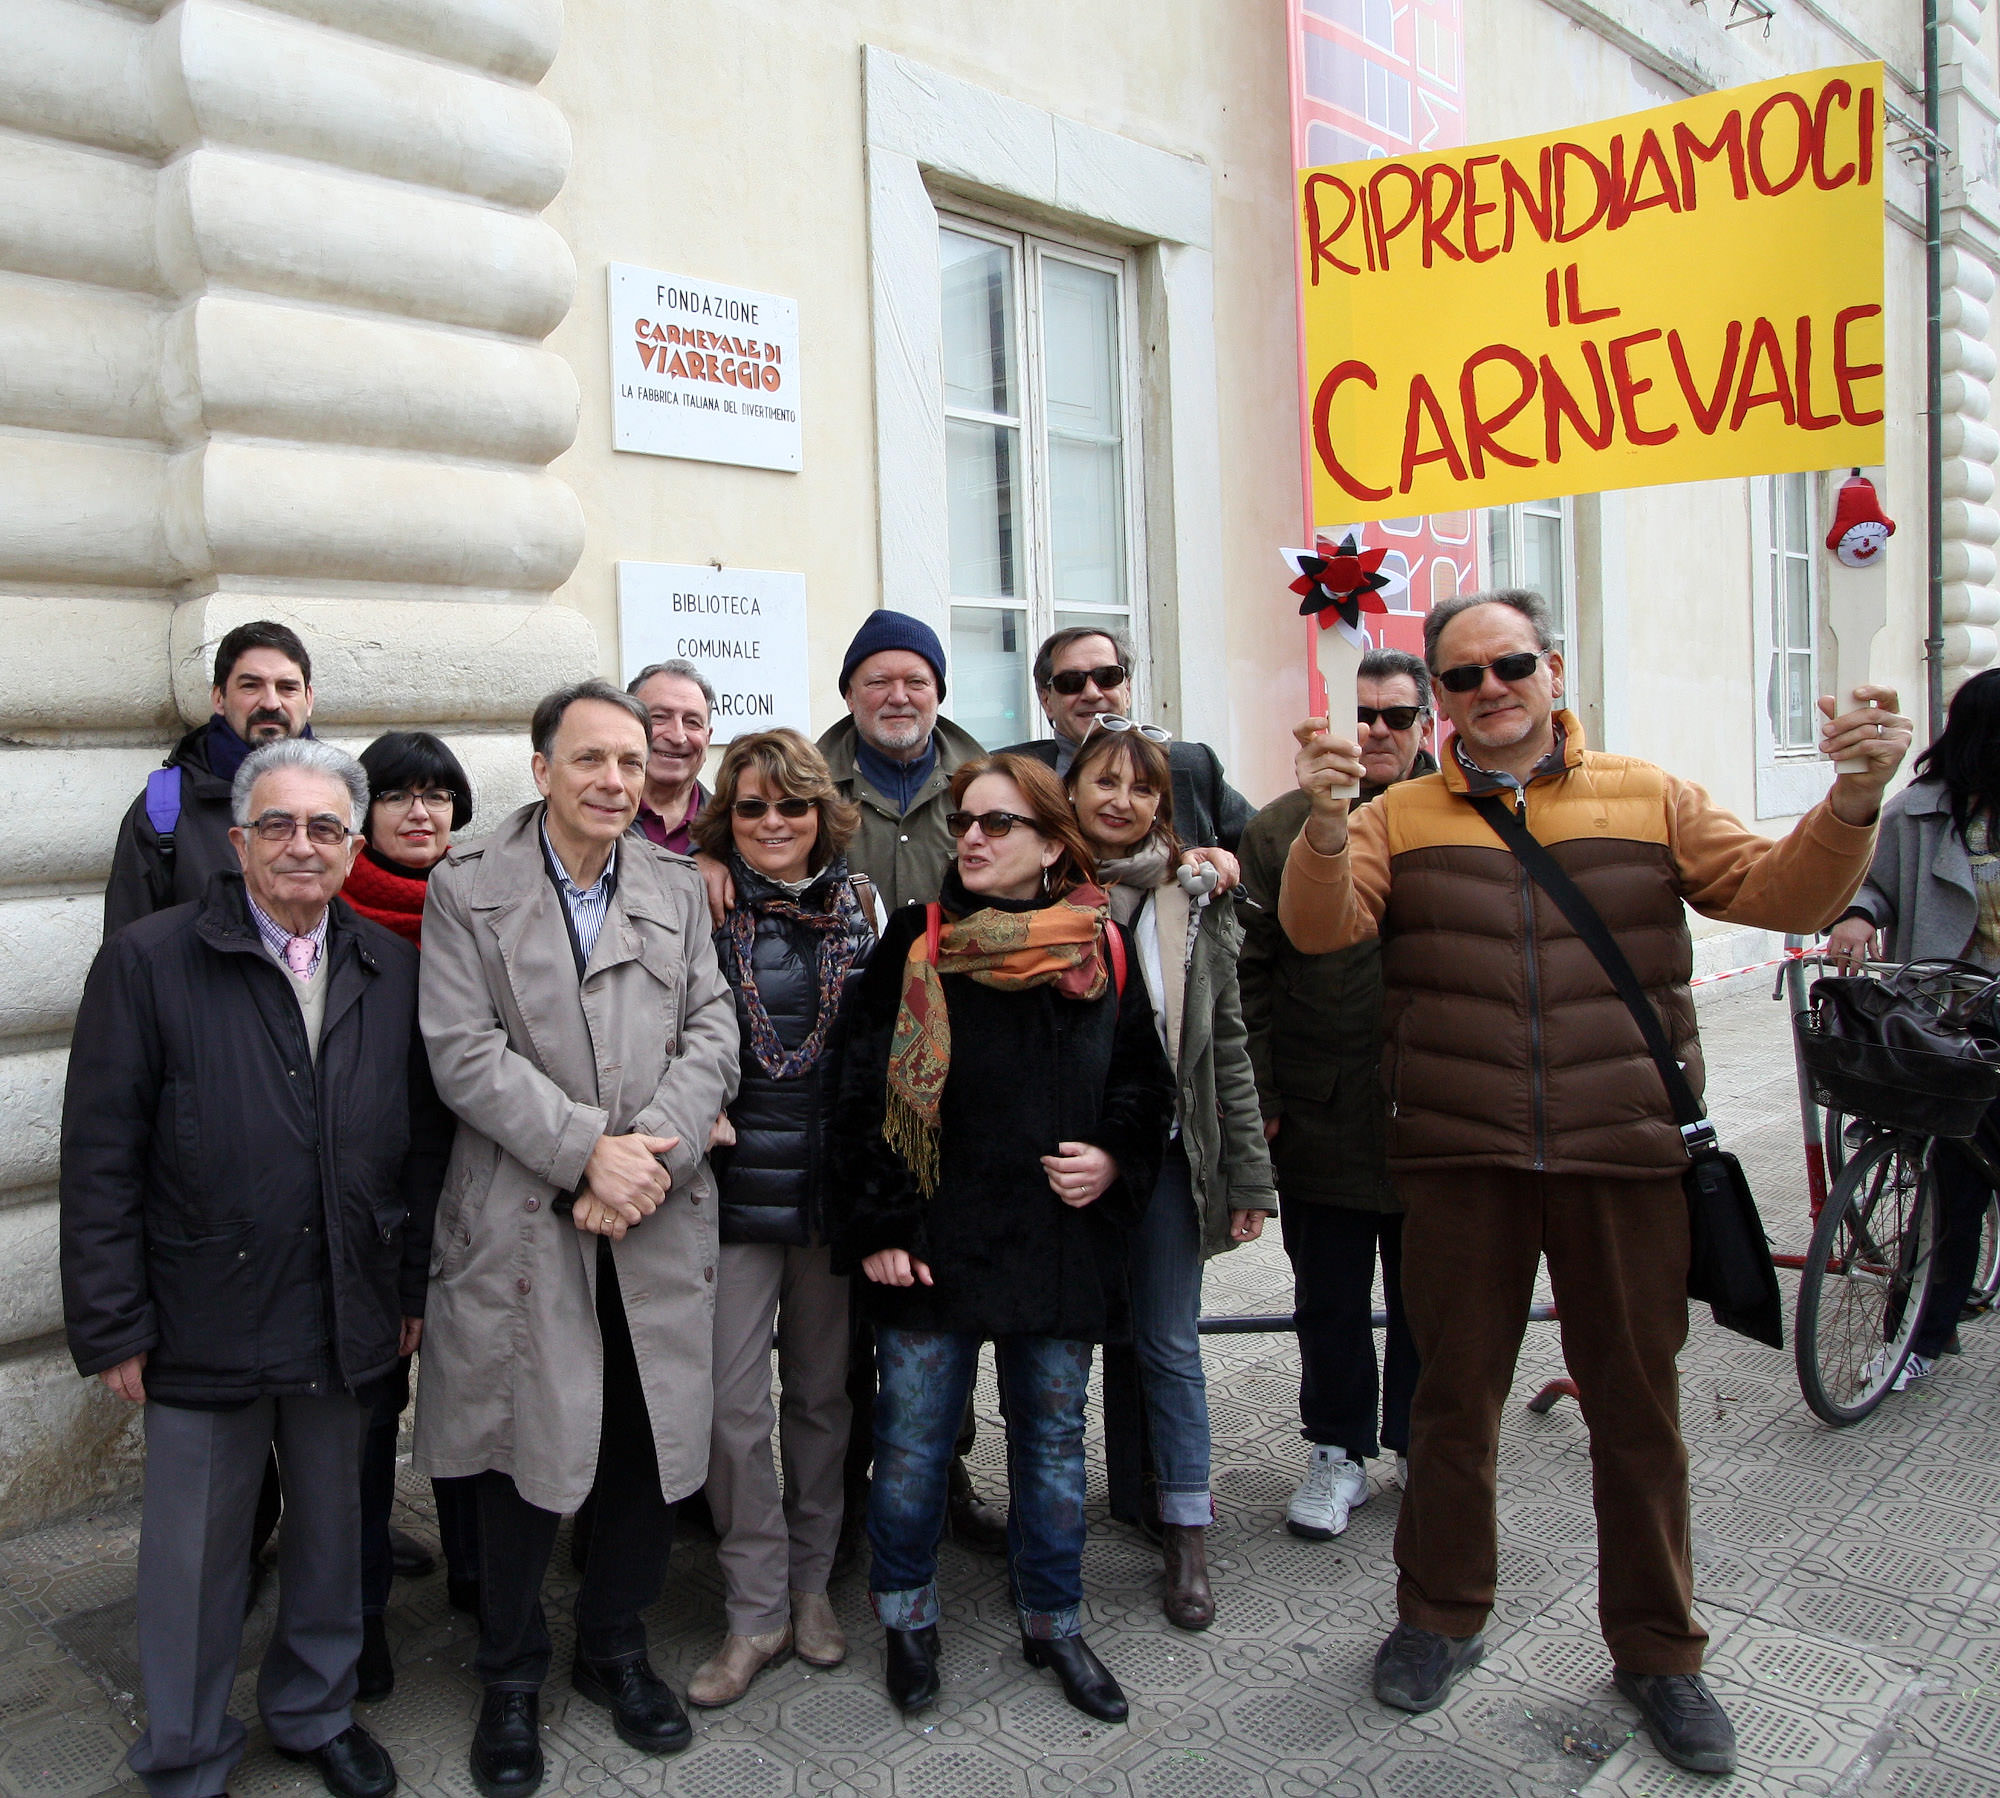 “Riprendiamoci il Carnevale”, i firmatari del manifesto incontrano i candidati sindaco